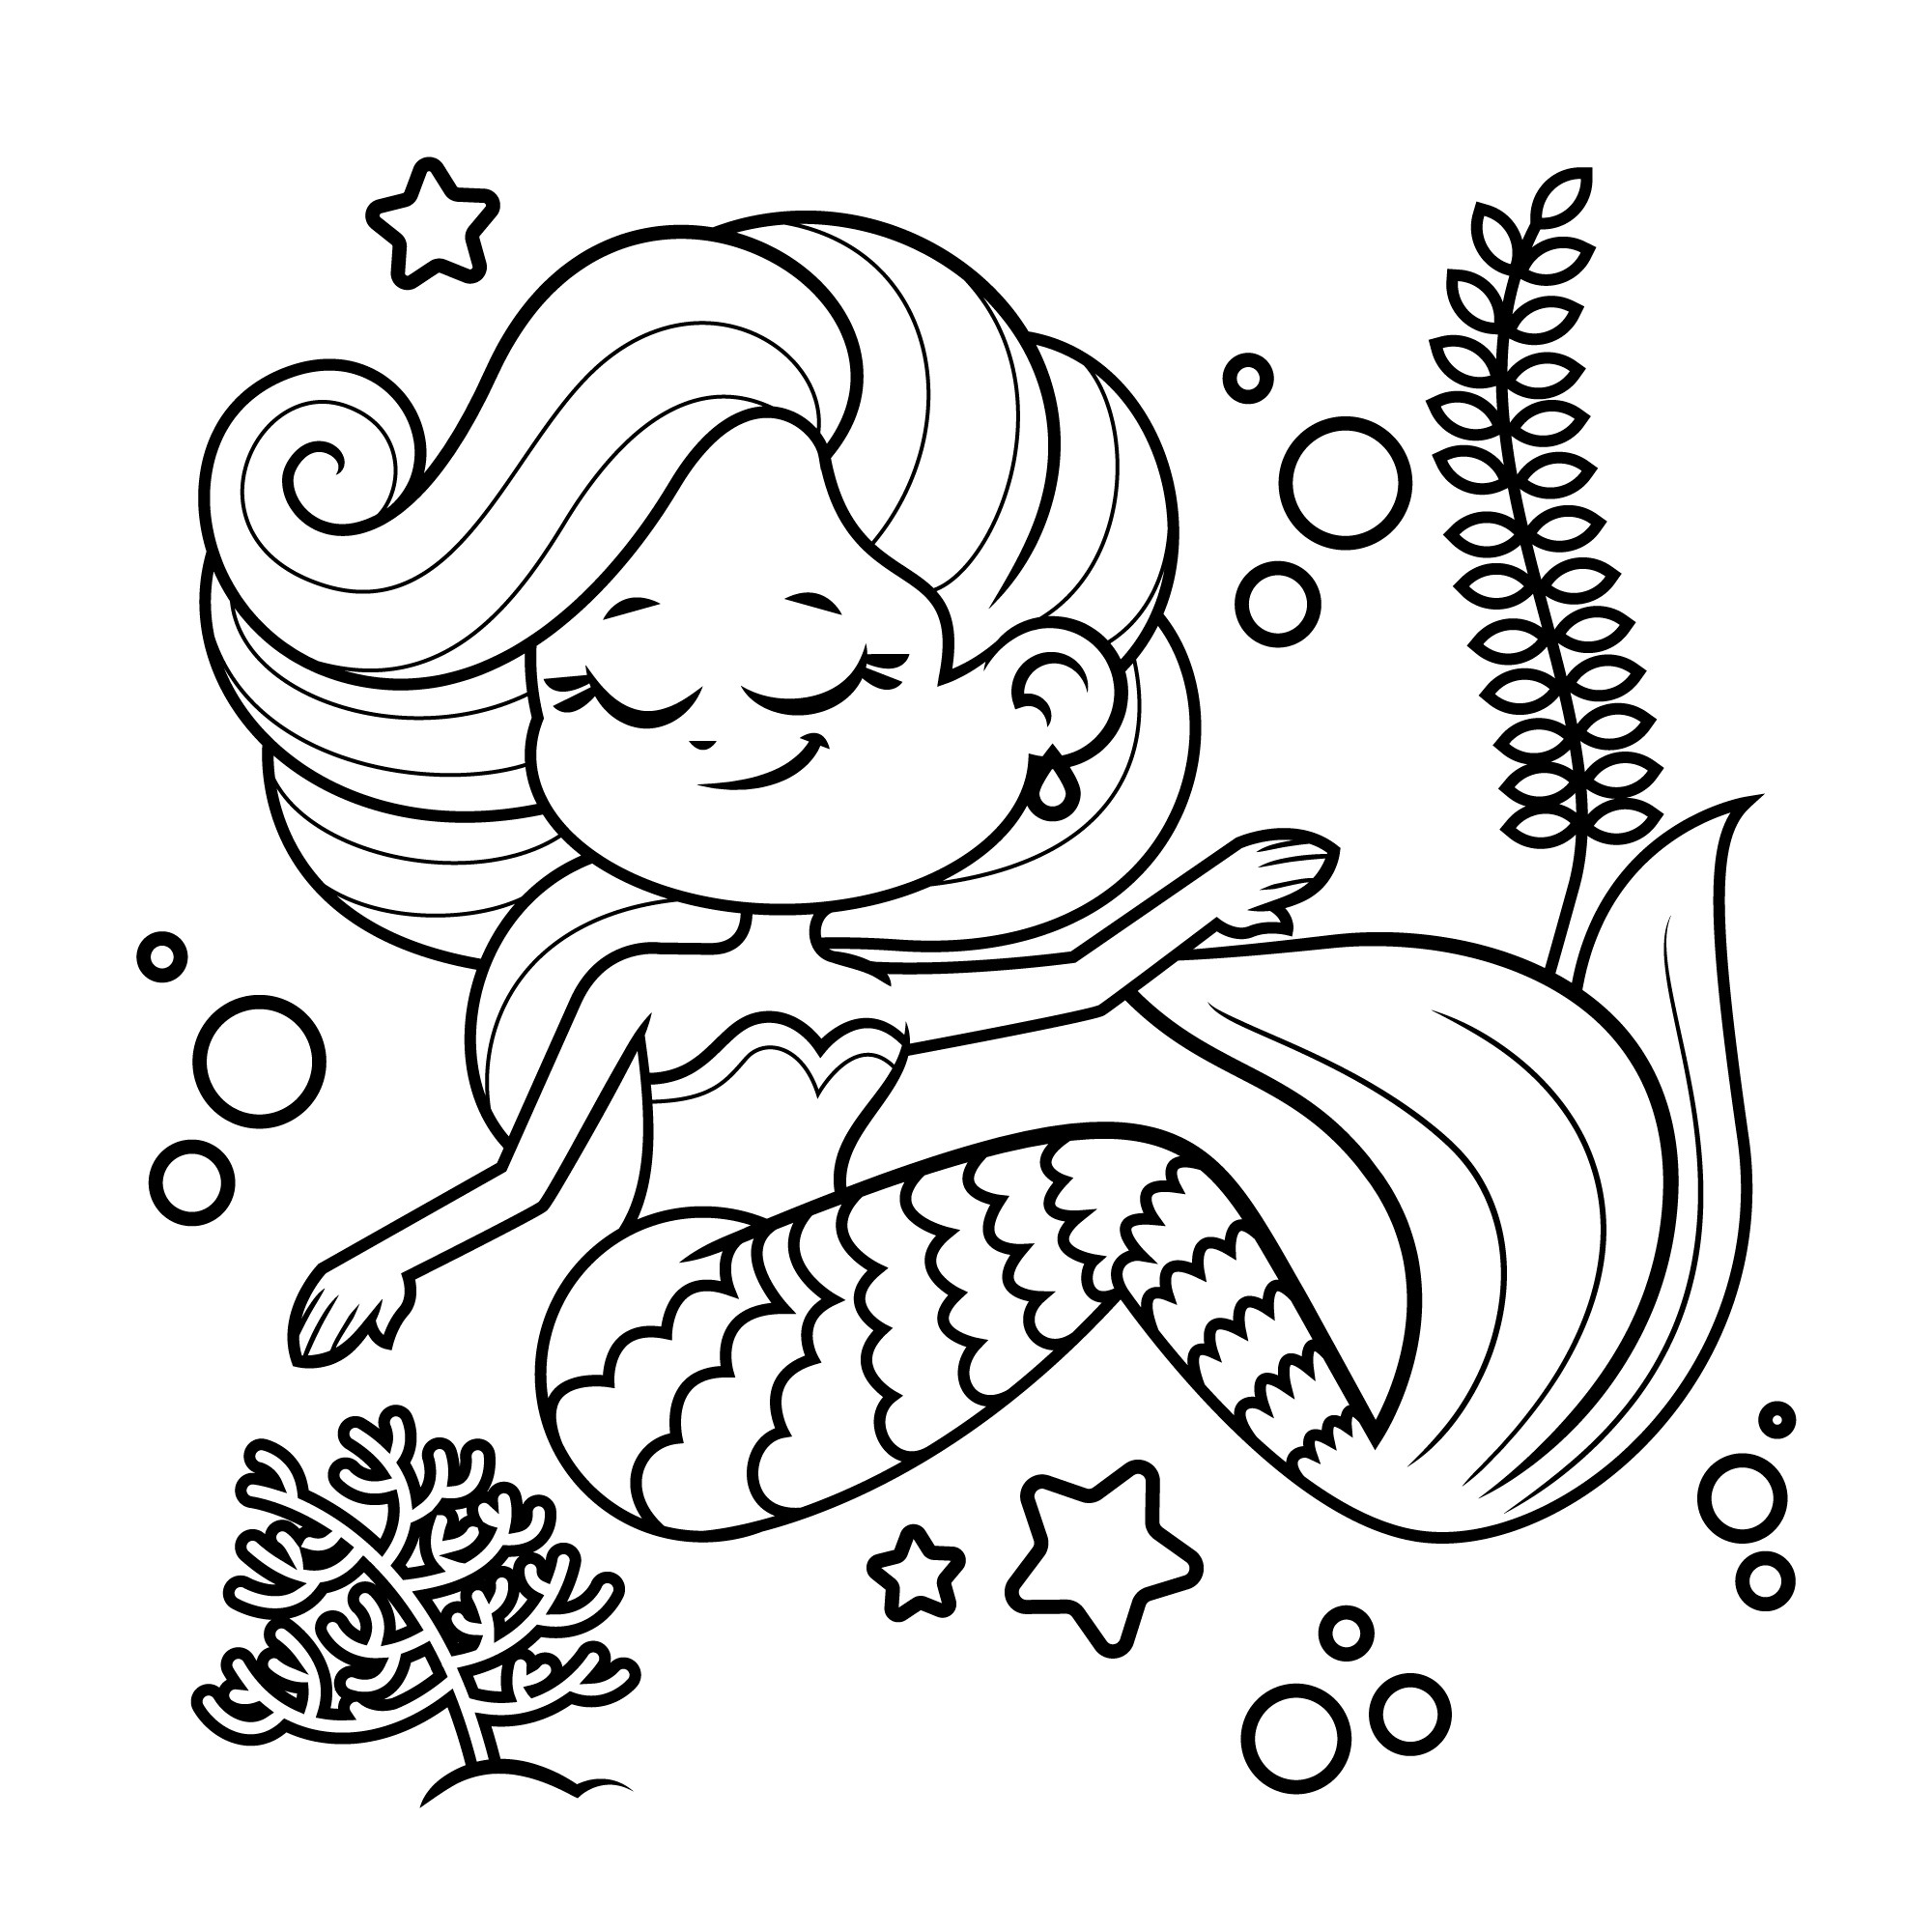 Раскраска для детей: русалка и водоросли